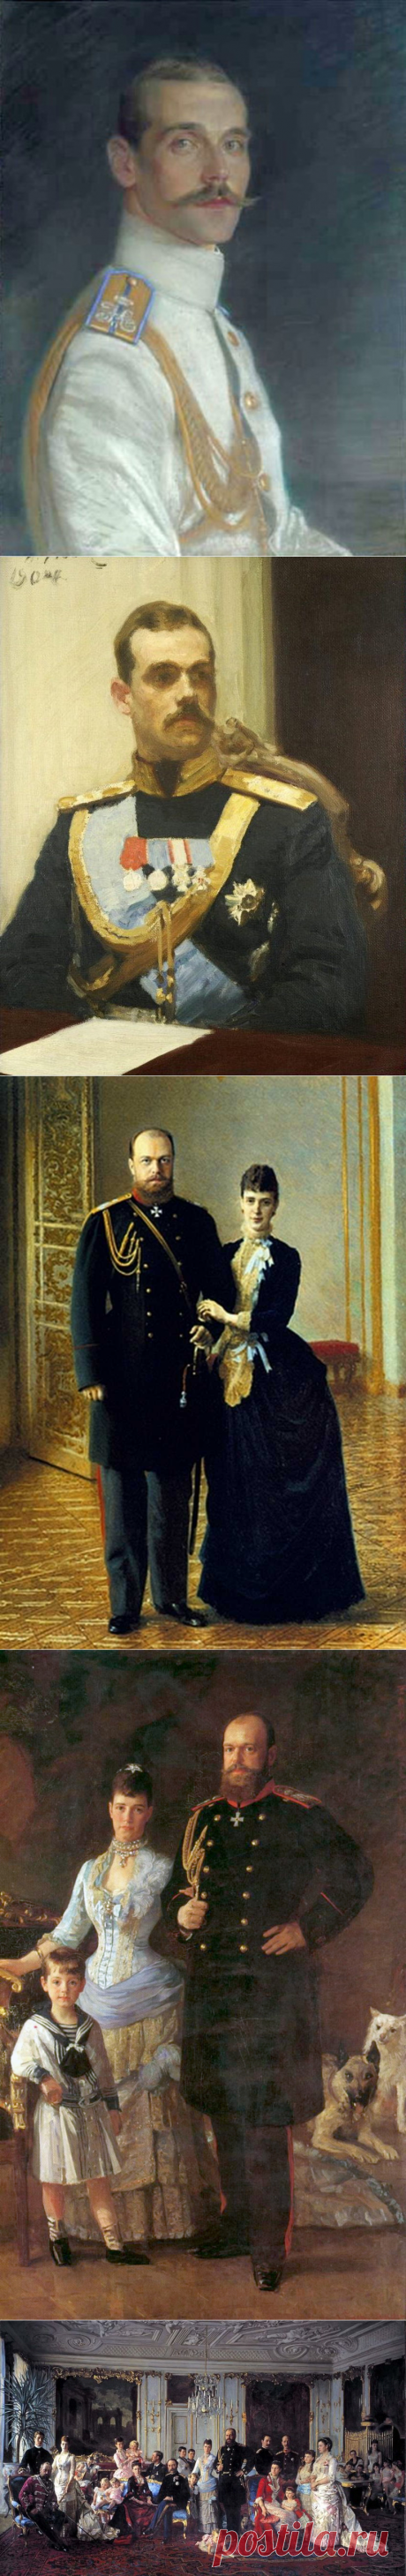 Великий князь Михаил Александрович Романов,сын императора Александра III.